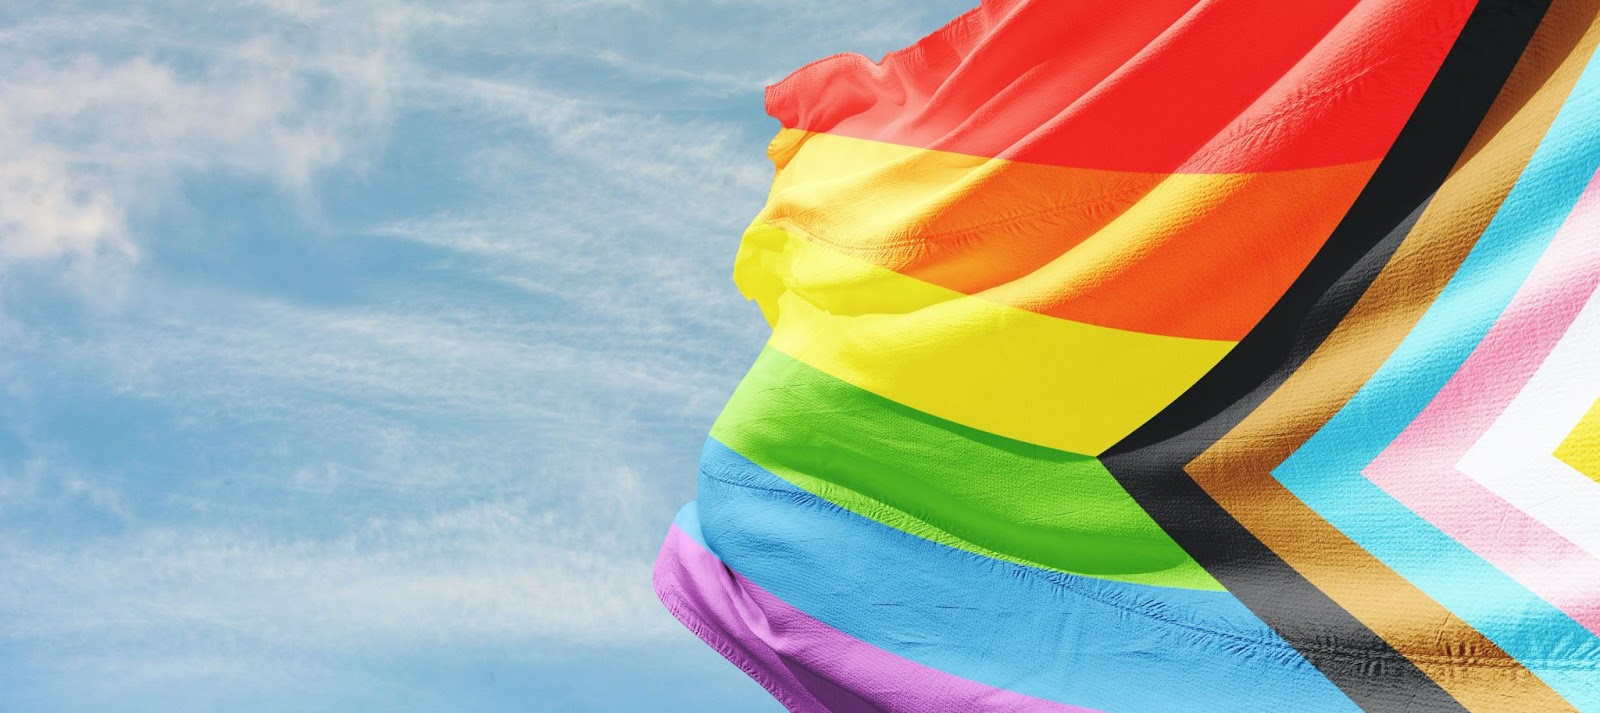 Bandeira representativa do movimento LGBTQIAPN+, com as cores do arco-íris e mais, balançando ao vento e revelando um céu azul claro com nuvens brancas ao fundo.